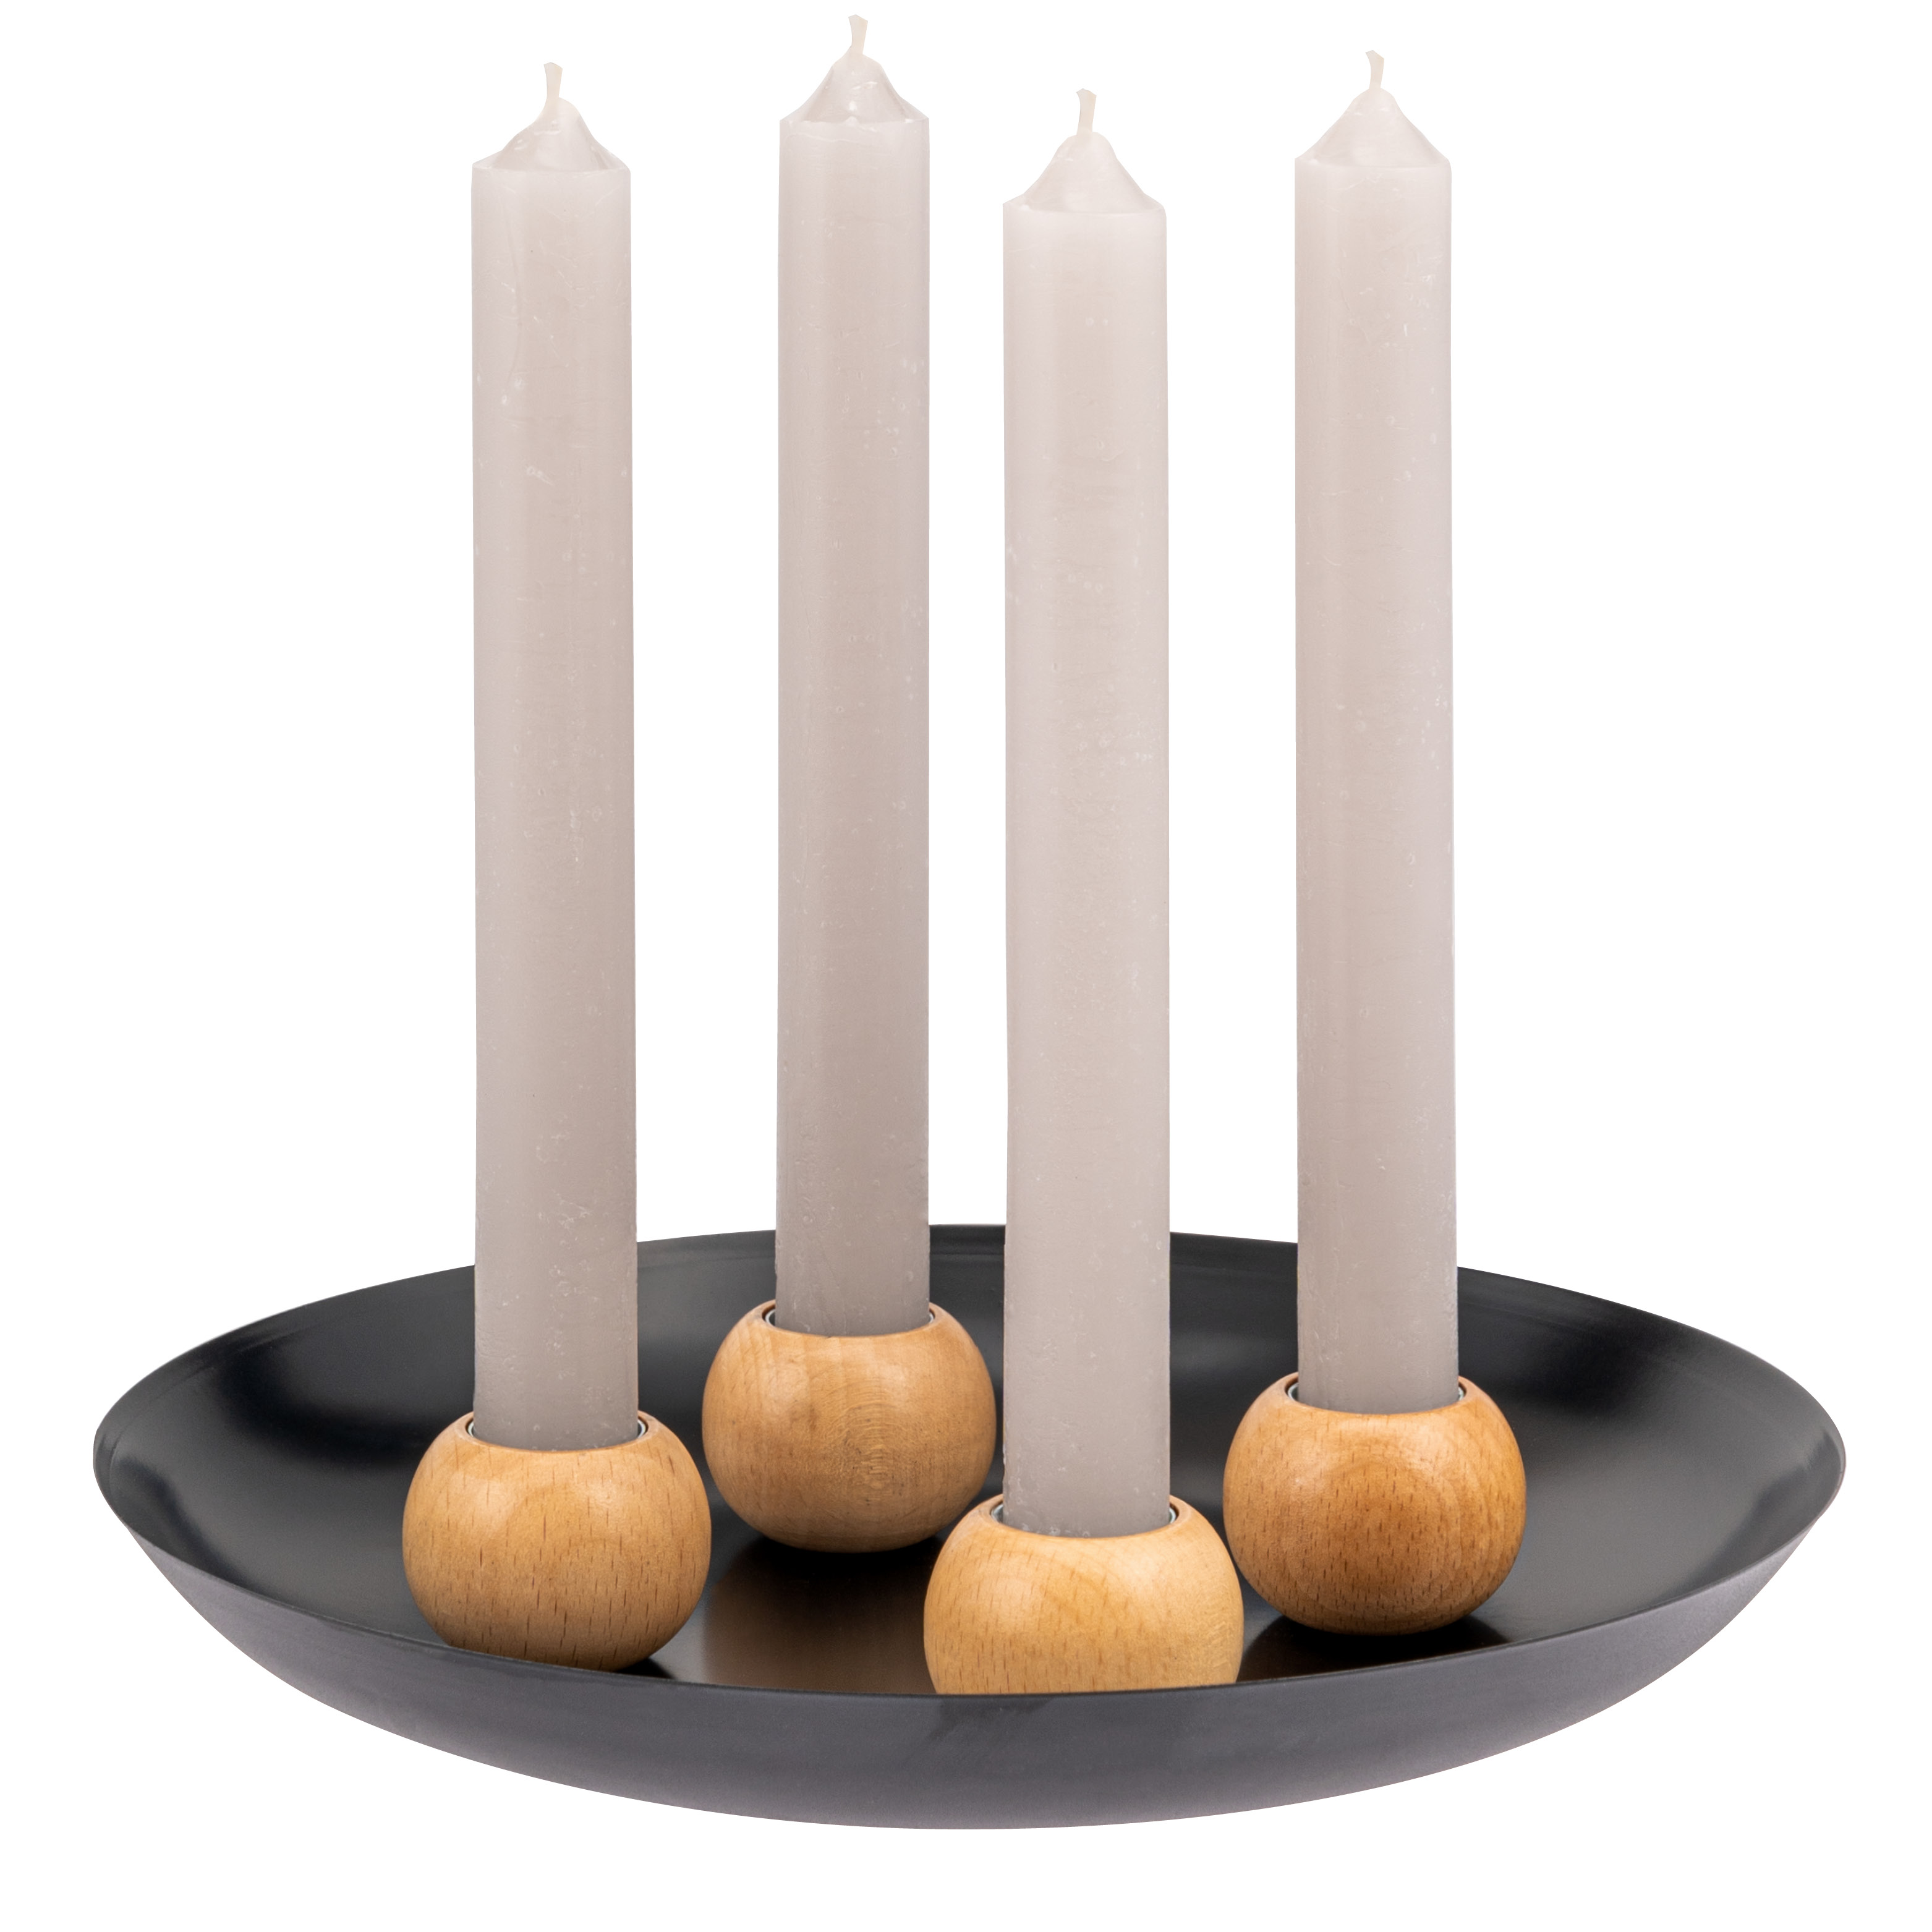 Kerzentablett mit 4 magnetischen Kerzenhaltern für Stabkerzen, Kerzenständer Metall/Holz, schwarz